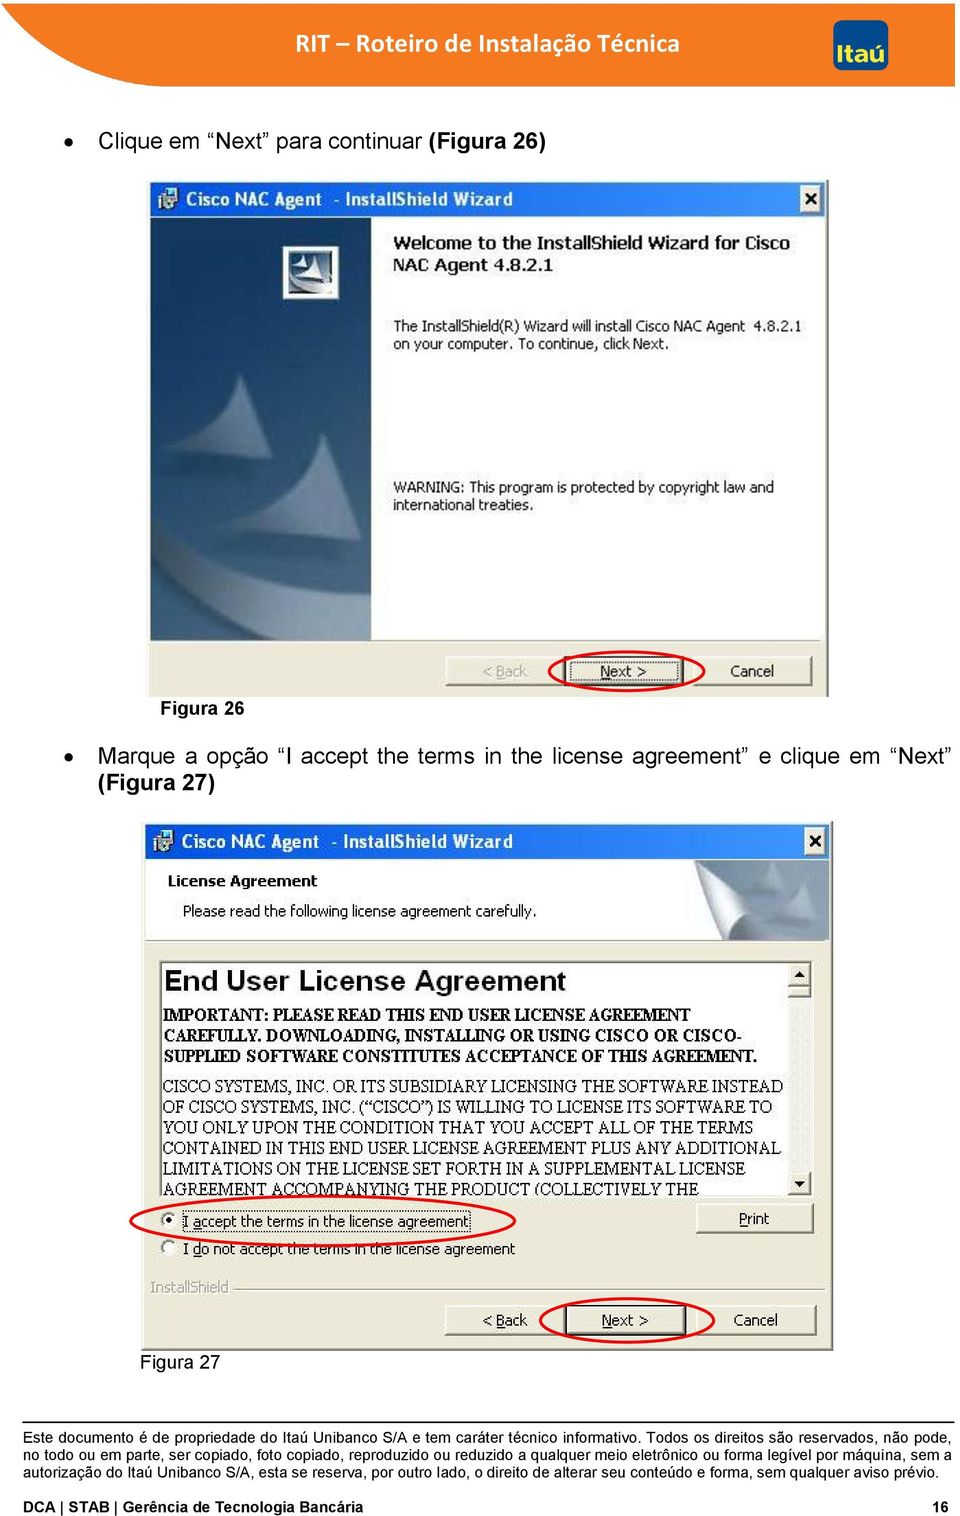 license agreement e clique em Next (Figura 27)